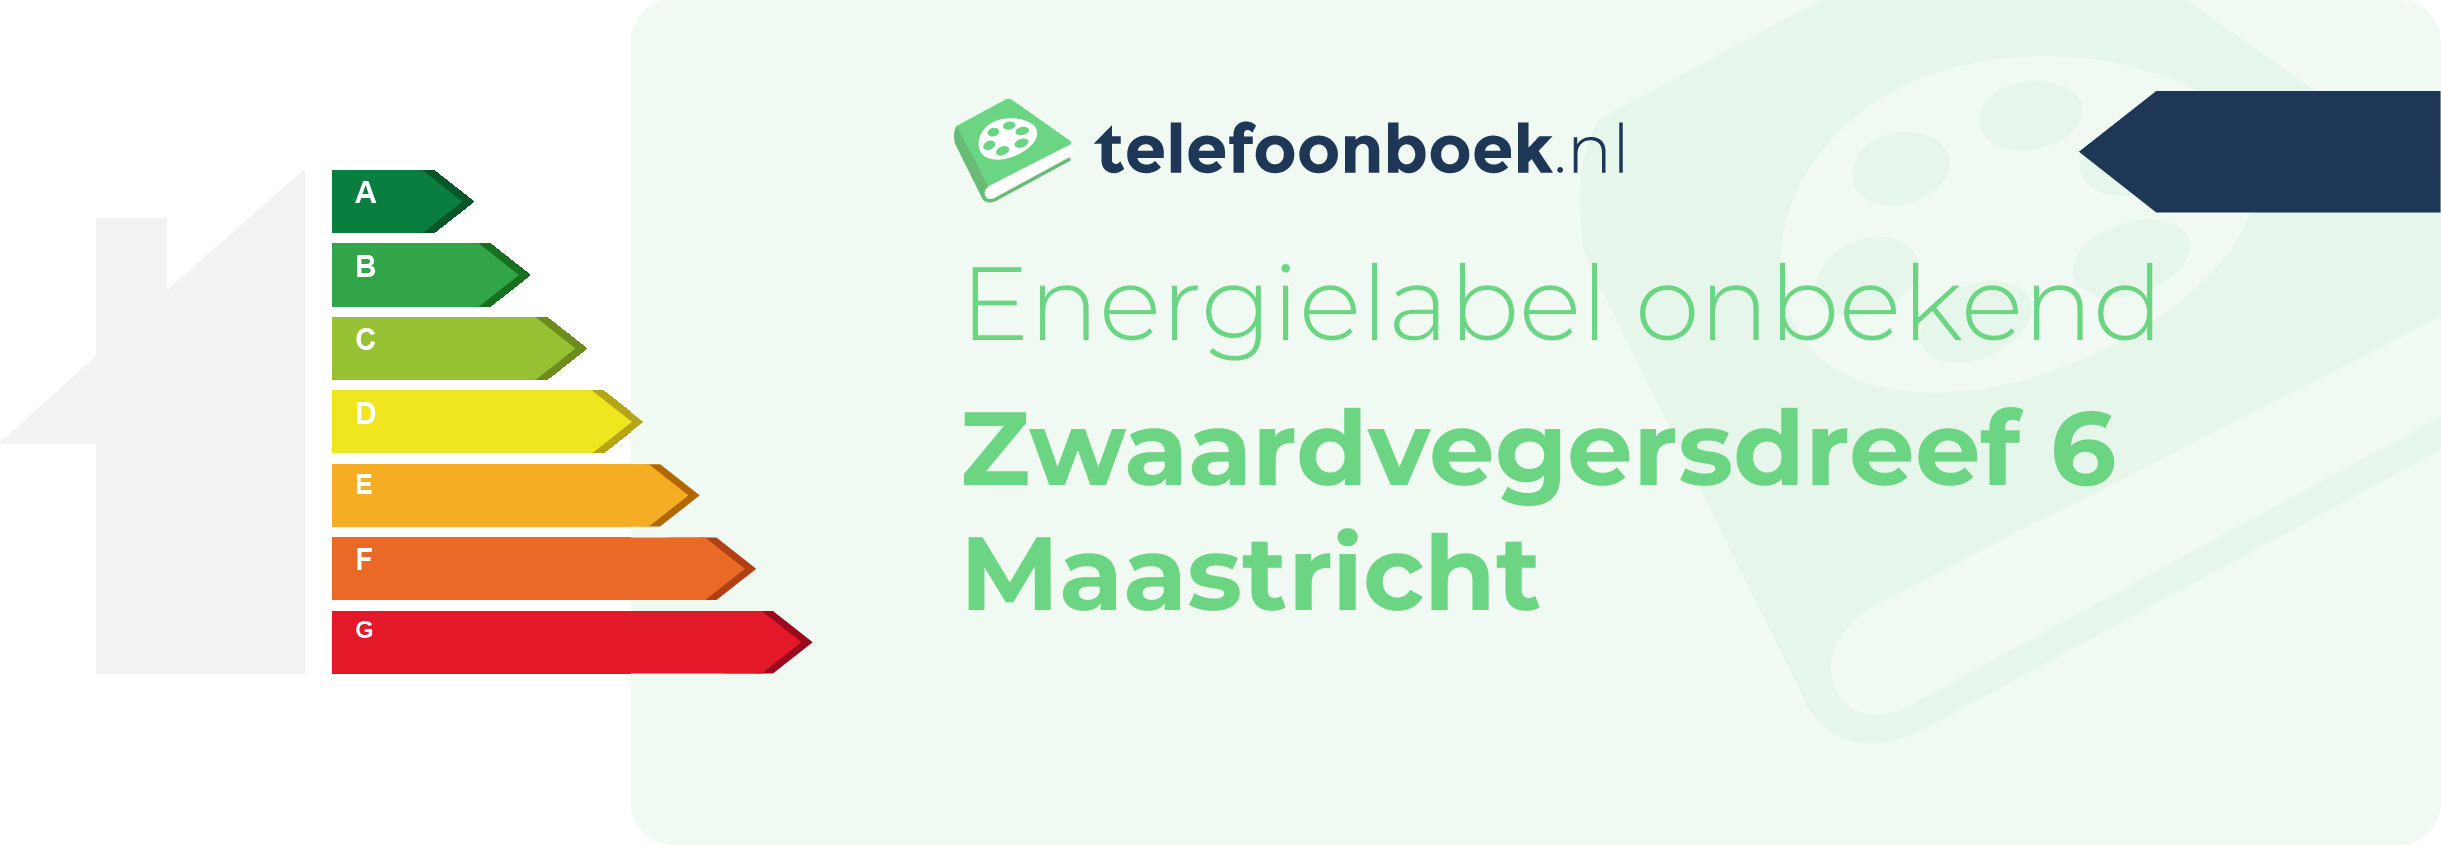 Energielabel Zwaardvegersdreef 6 Maastricht